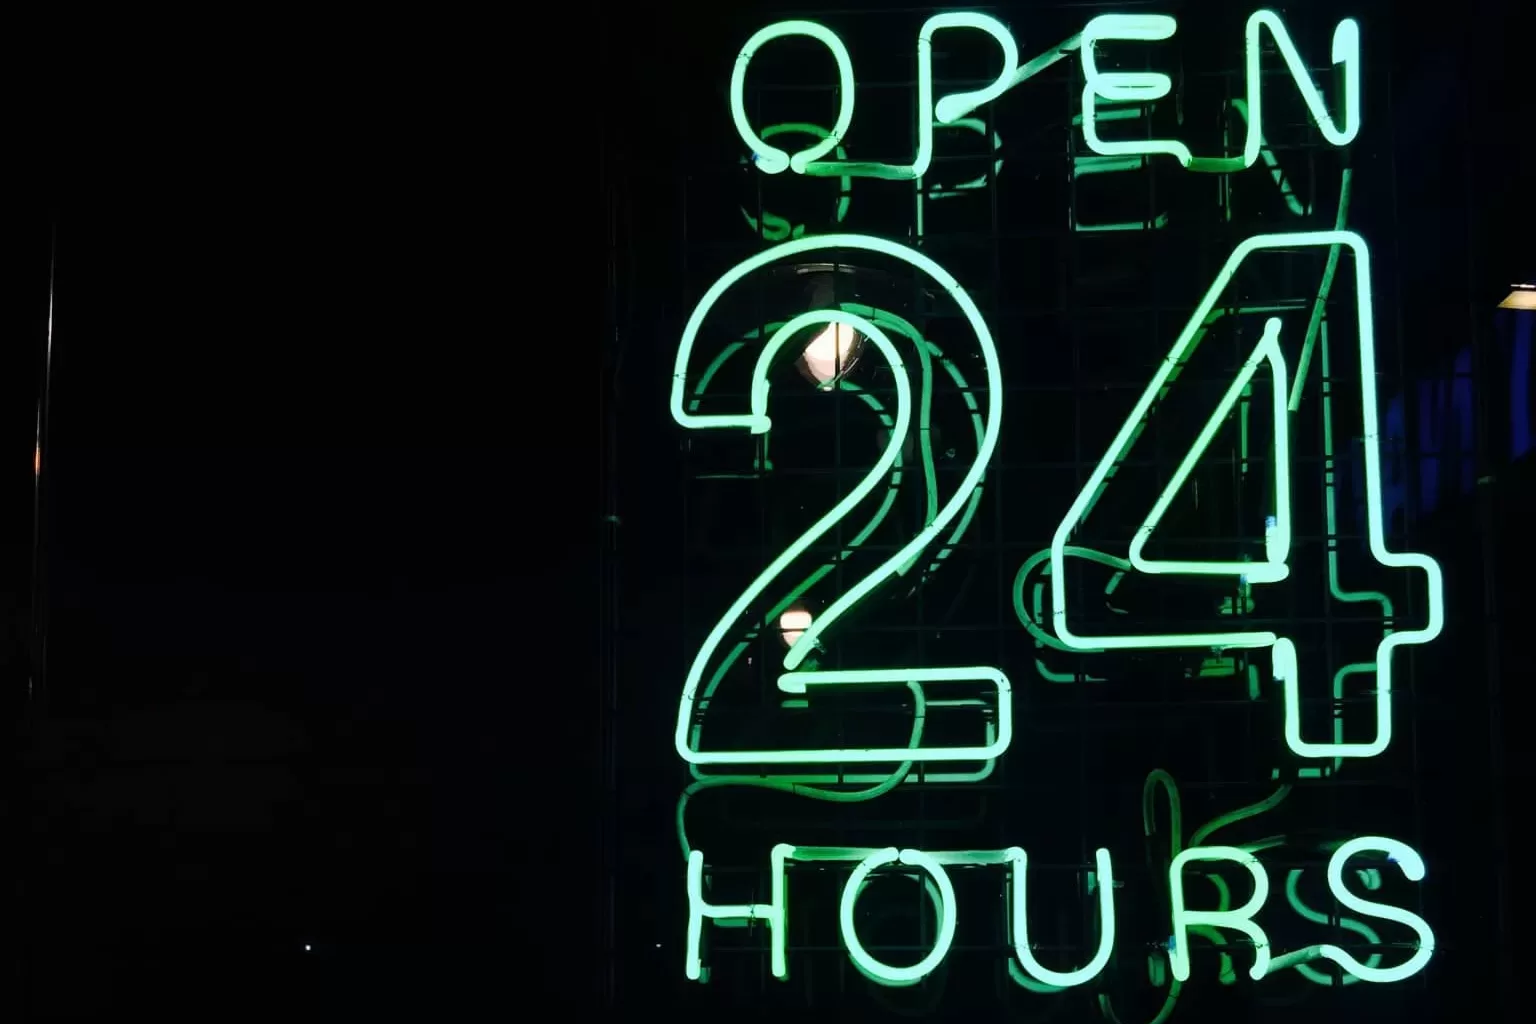 open 24 hour